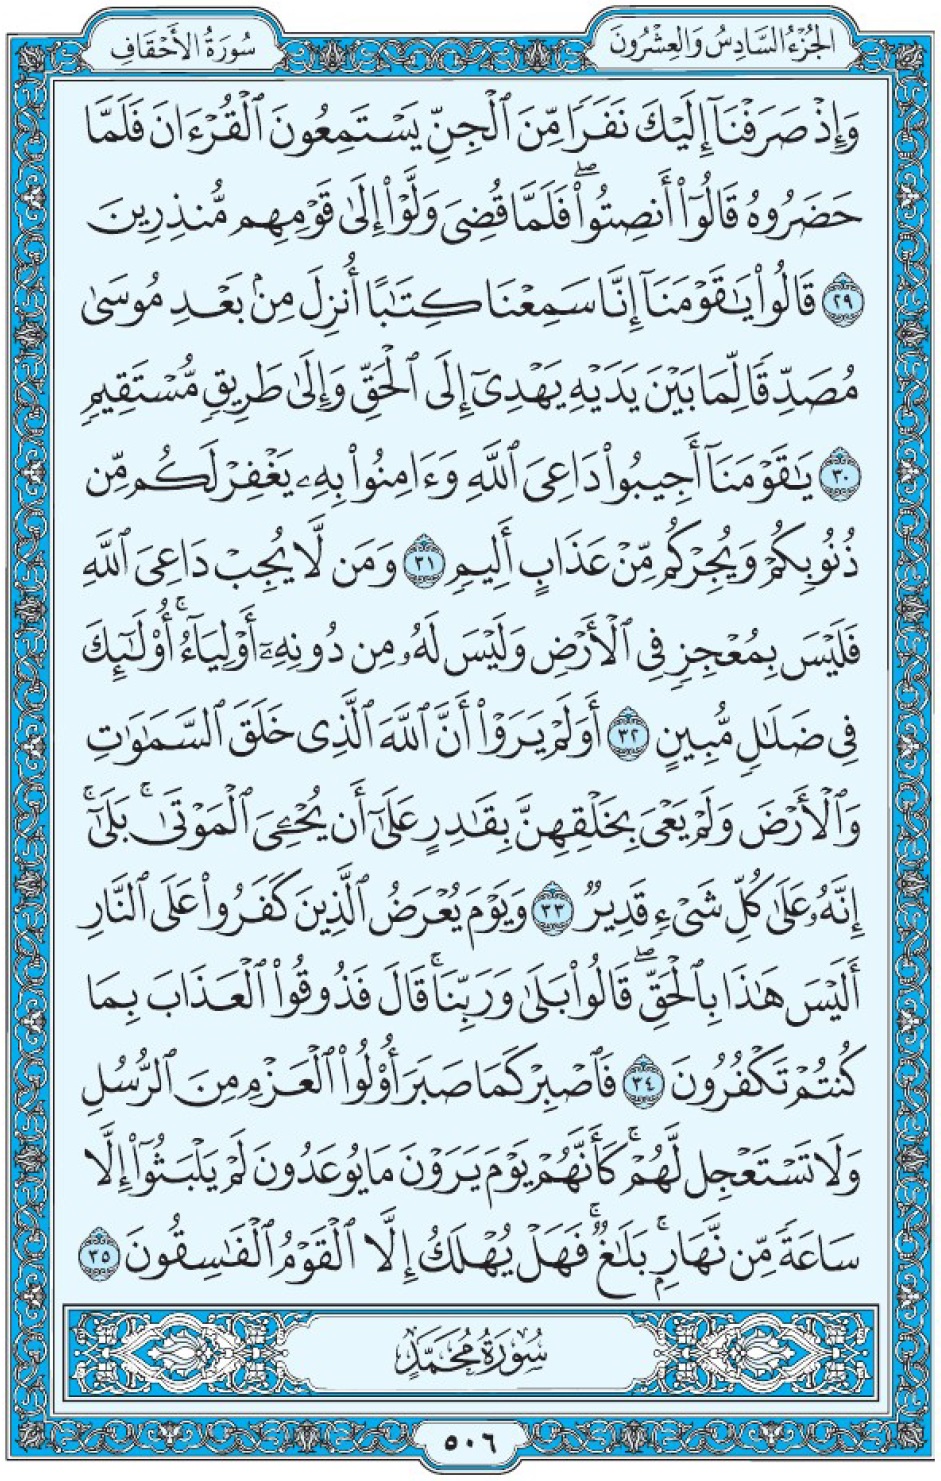 Коран Мединский мусхаф страница 506, Аль-Ахкаф, аят 29-35